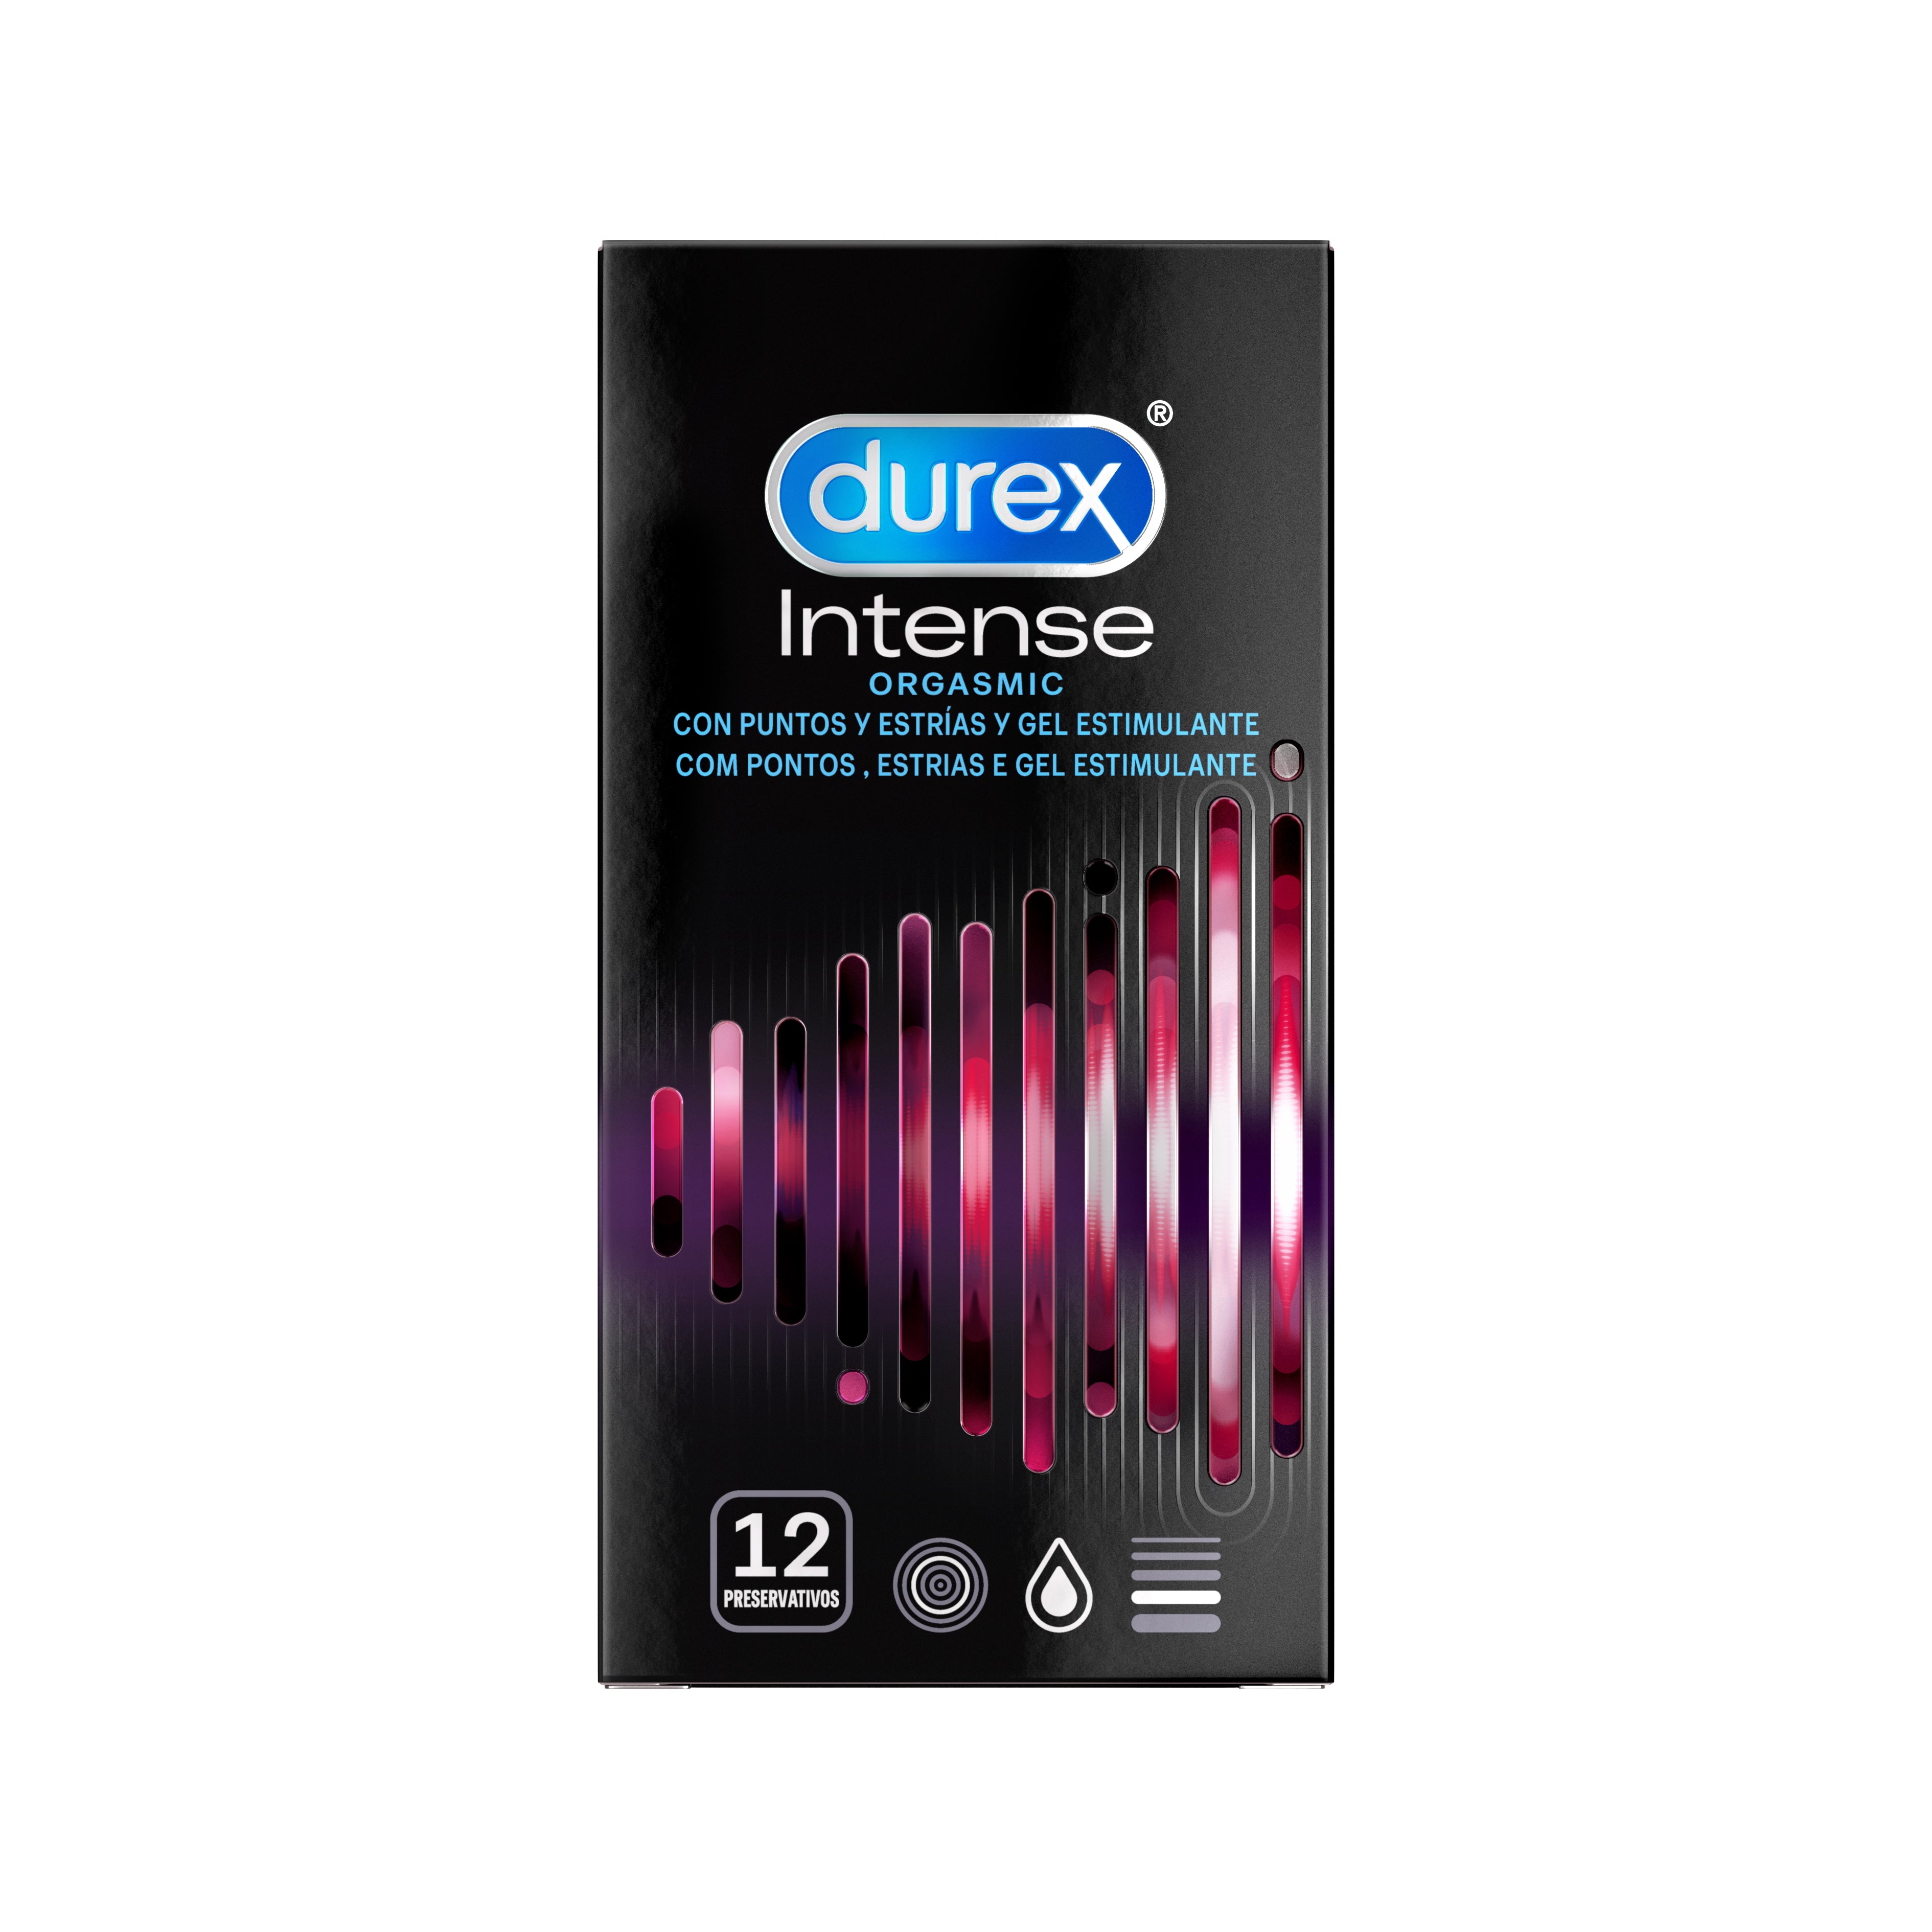 Durex Intense Orgasmic Preservativos Durex PT